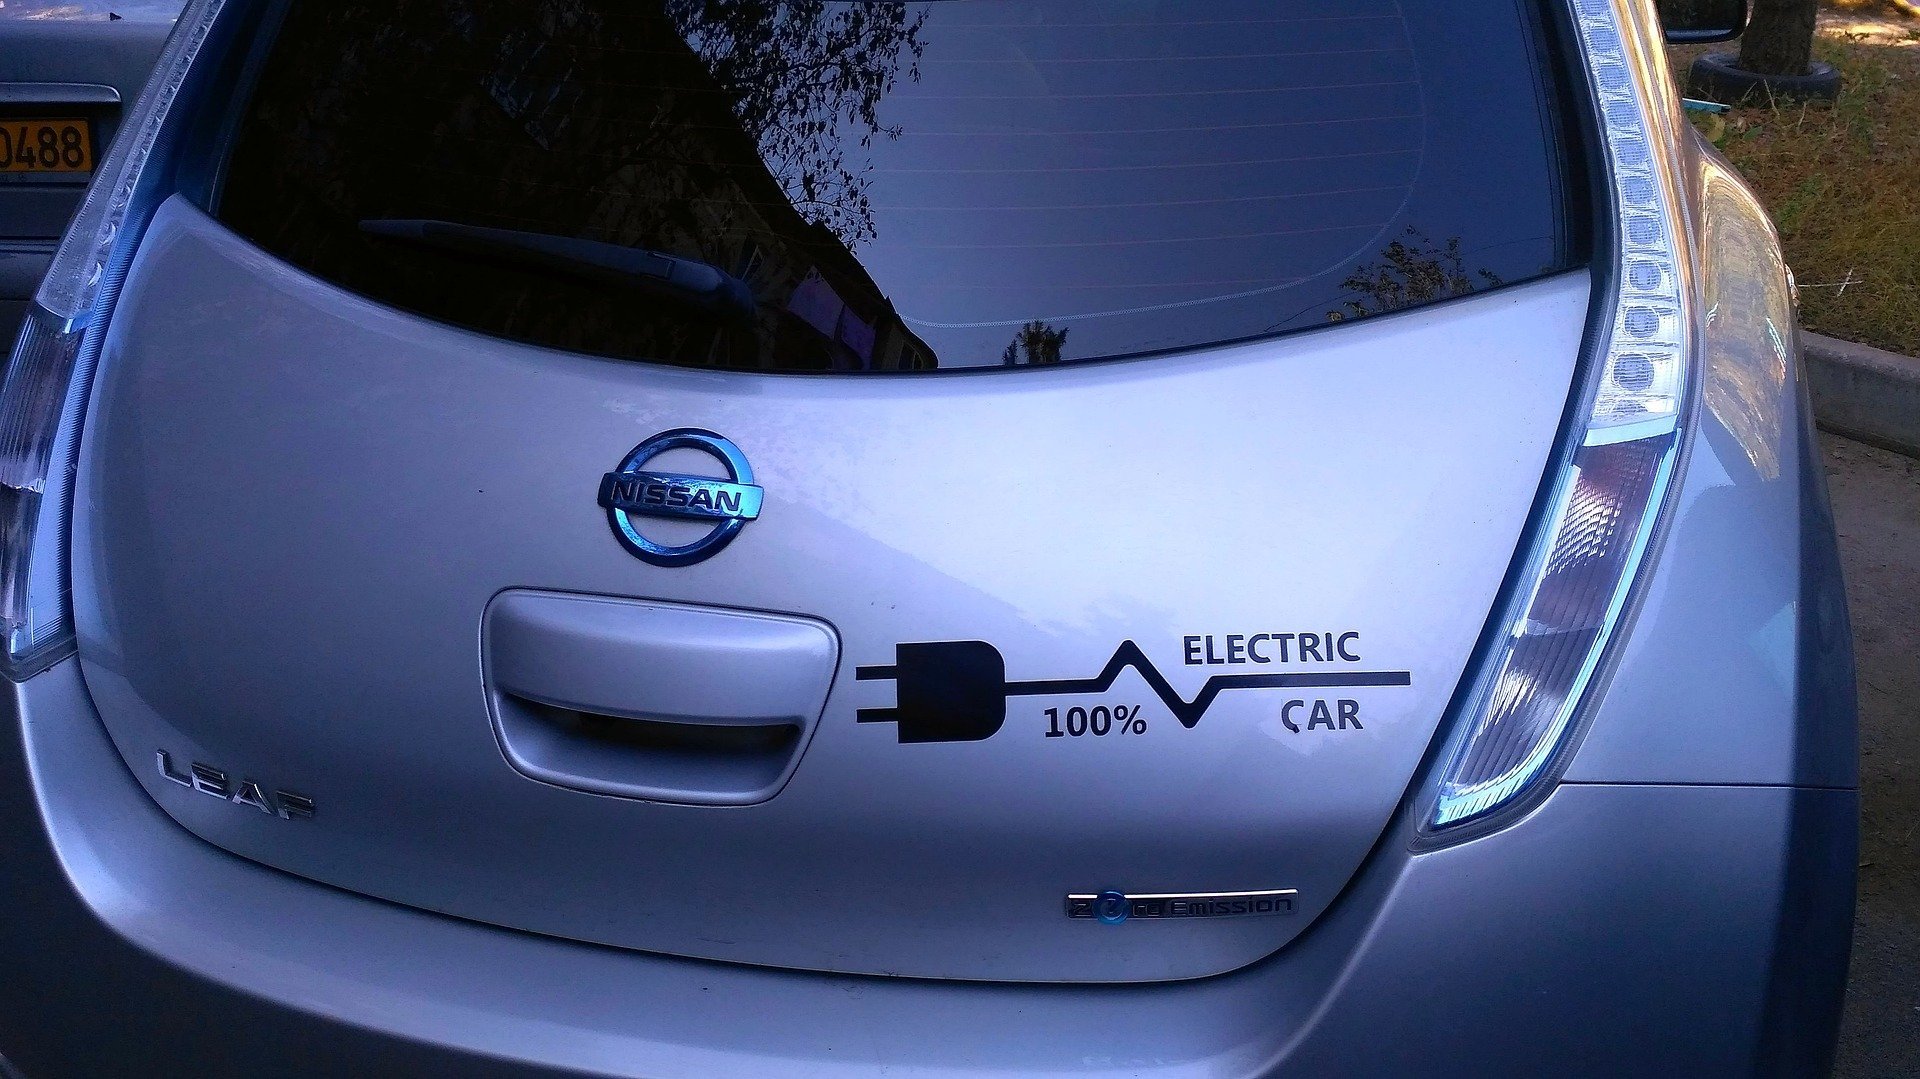 

В Удмуртии могут обнулить транспортный налог на электромобили

